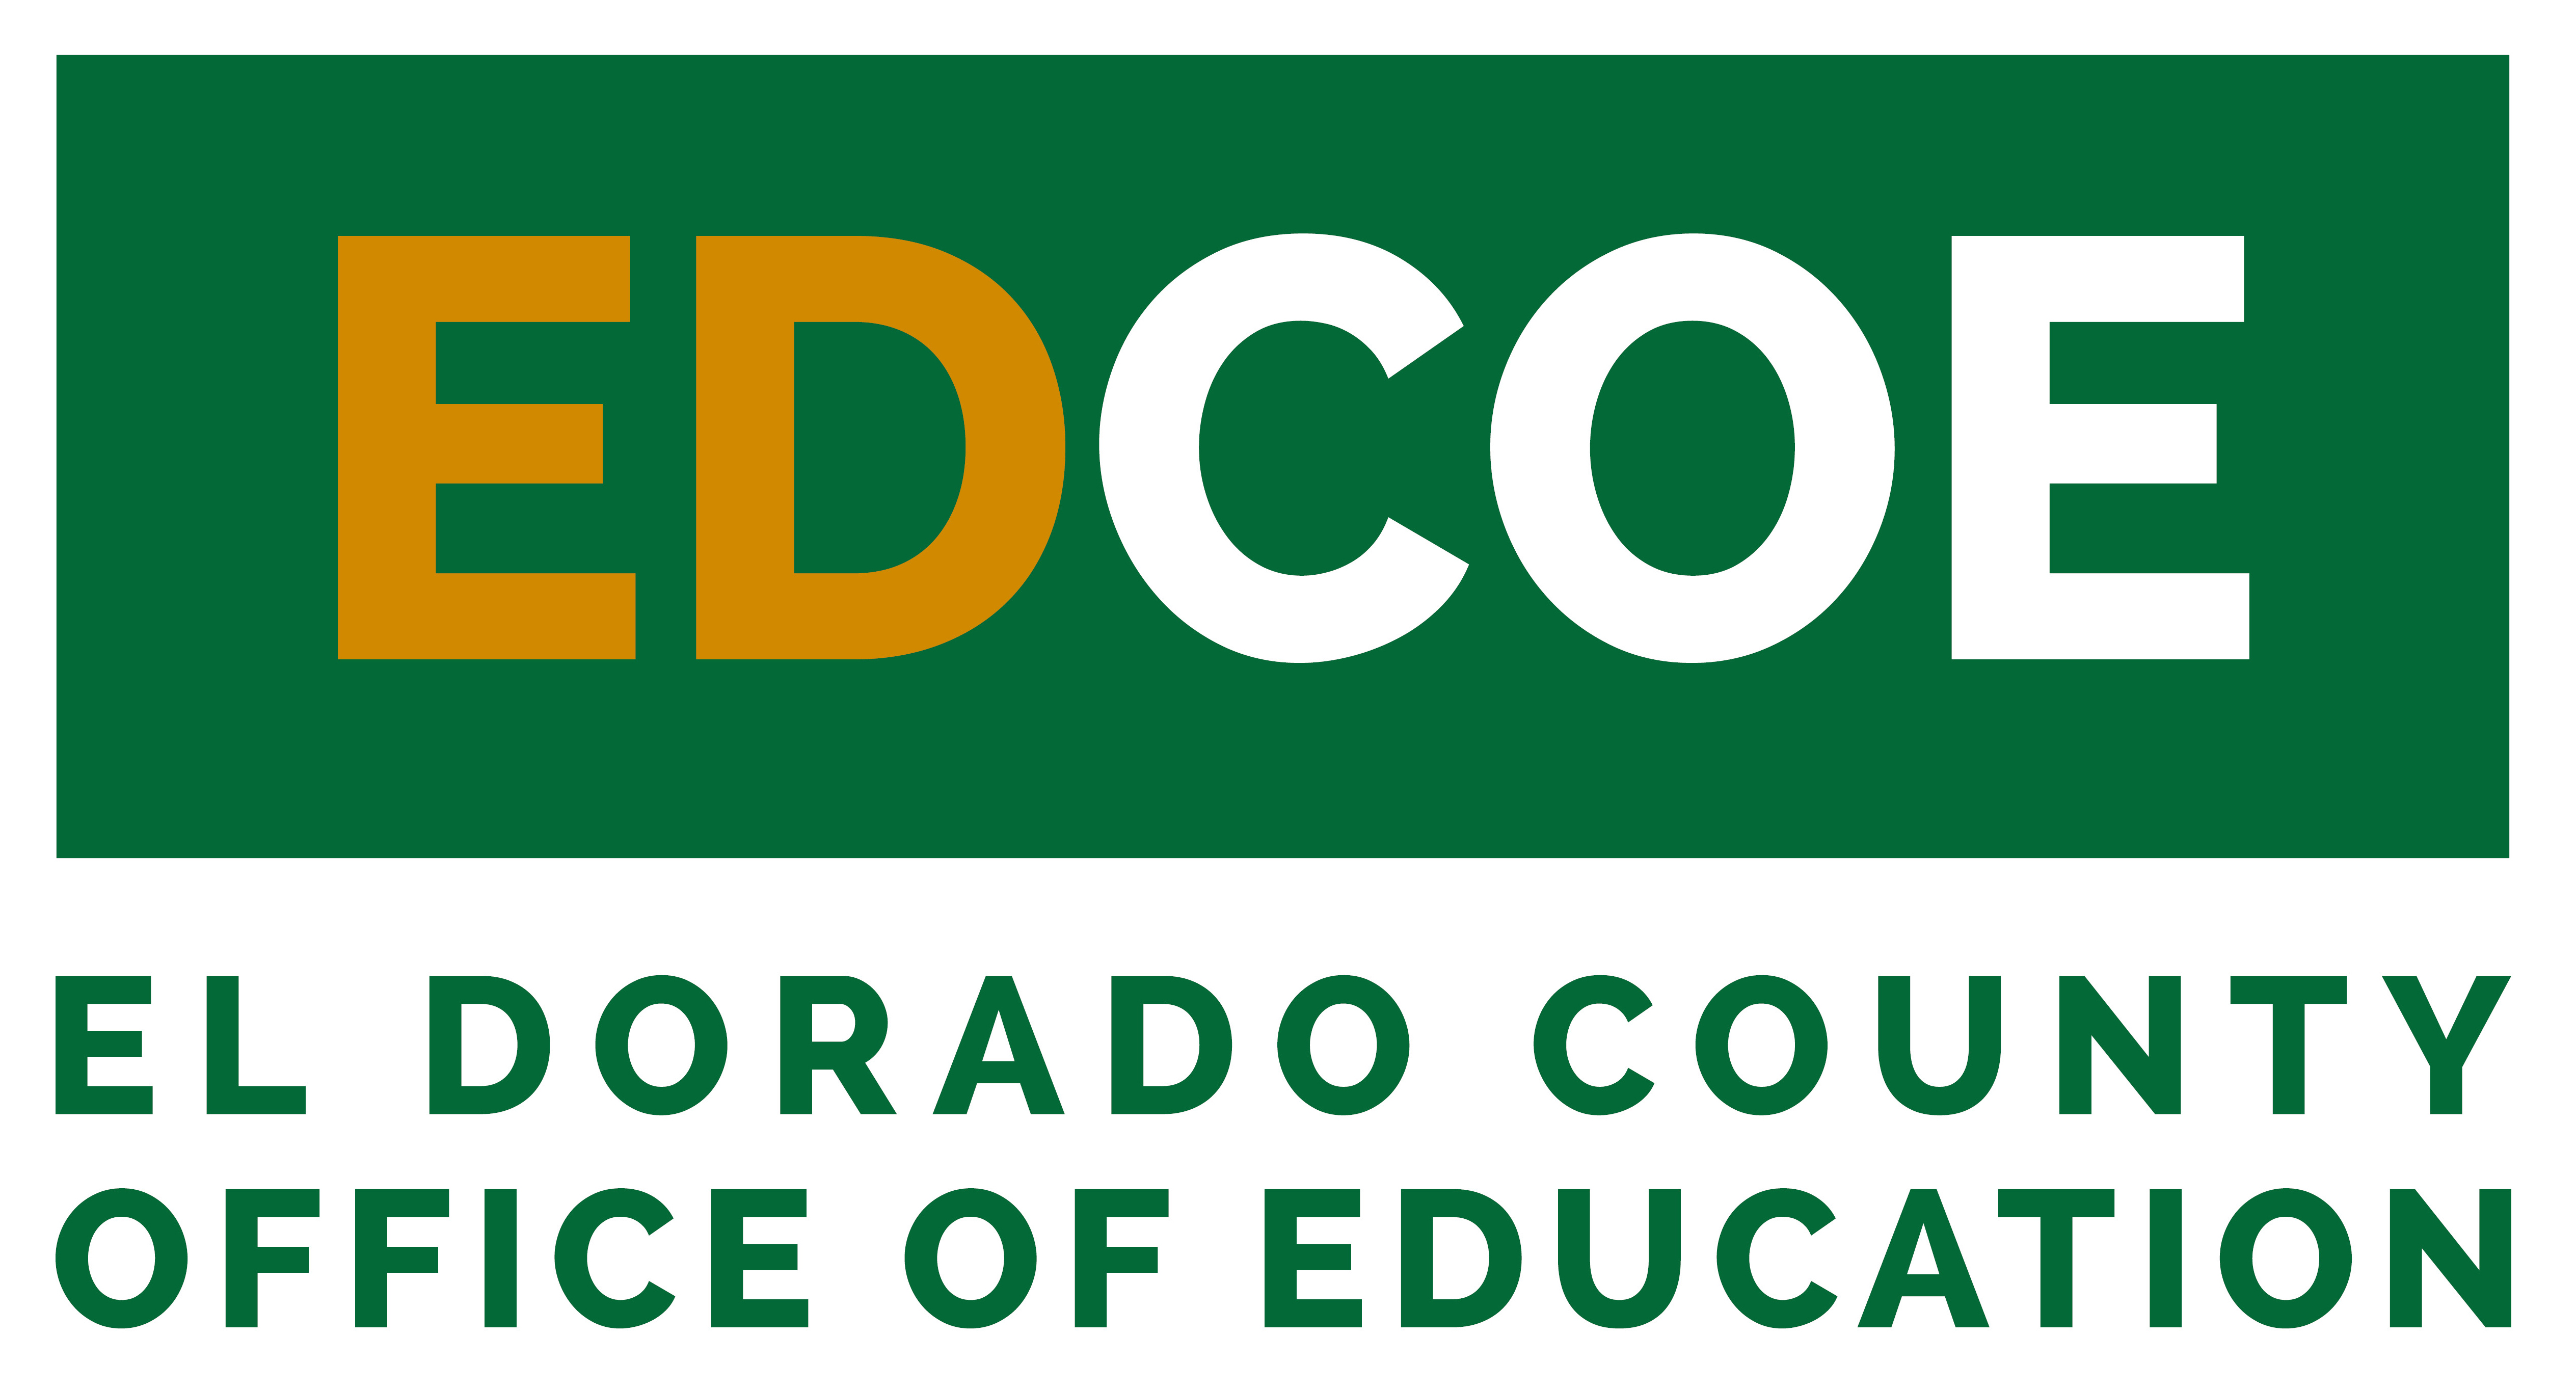 El Dorado County Office of Education logo